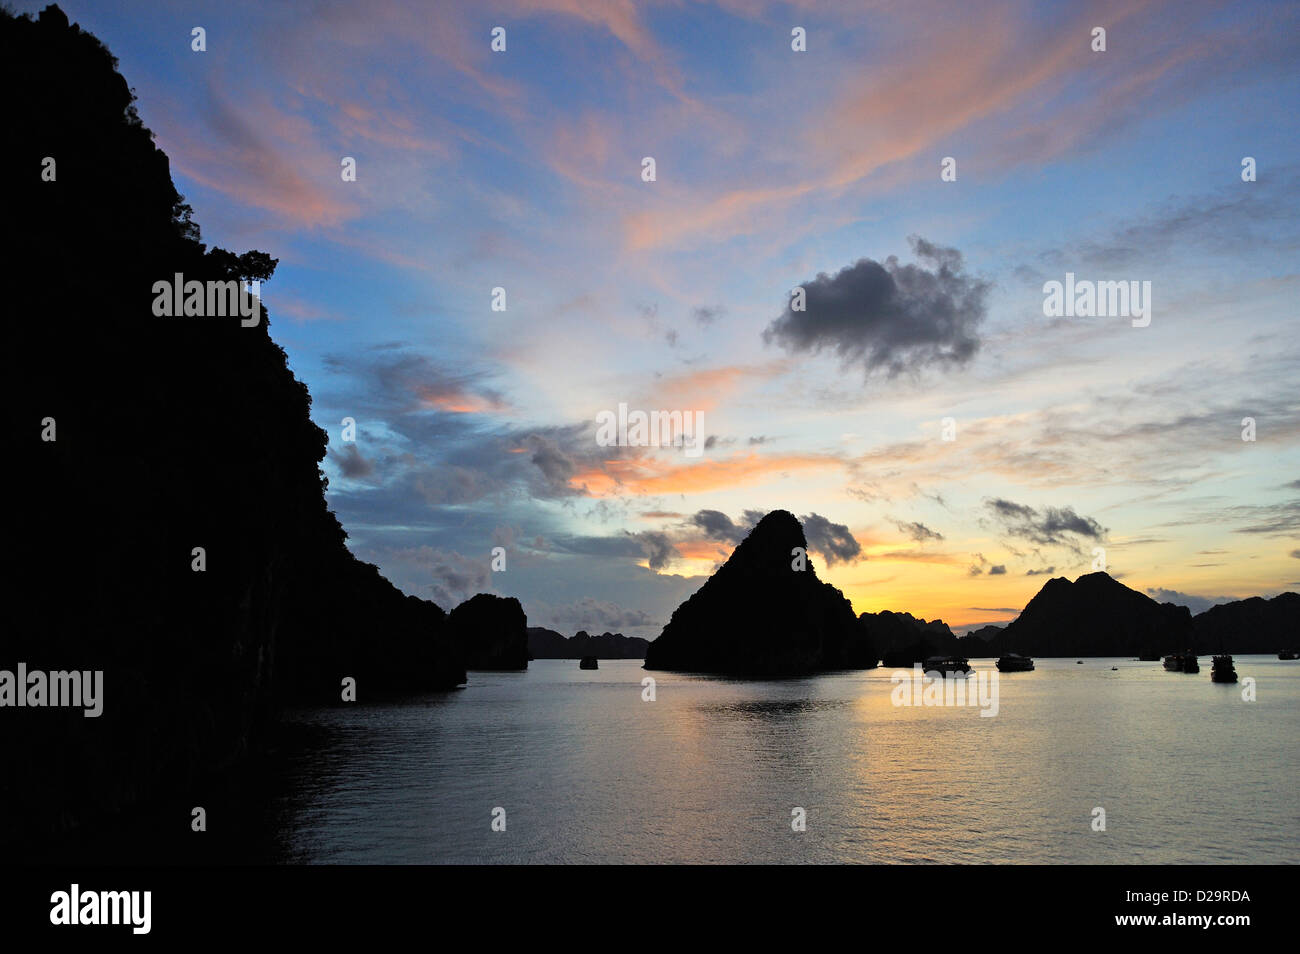 View at Halong Bay, Vietnam at sunset Stock Photo